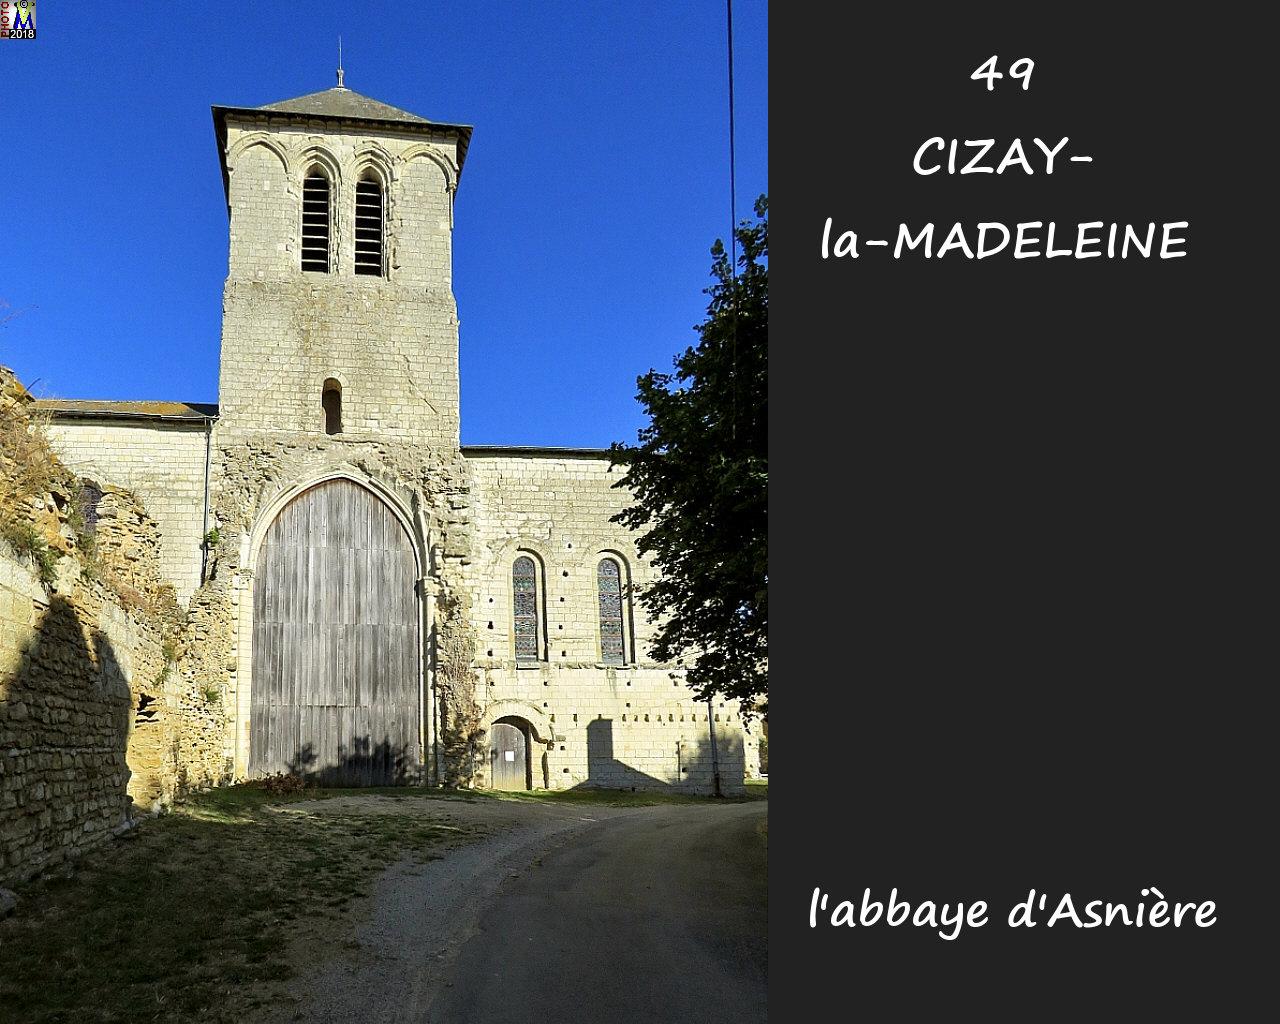 49CIZAY-MADELEINE_abbaye_1006.jpg